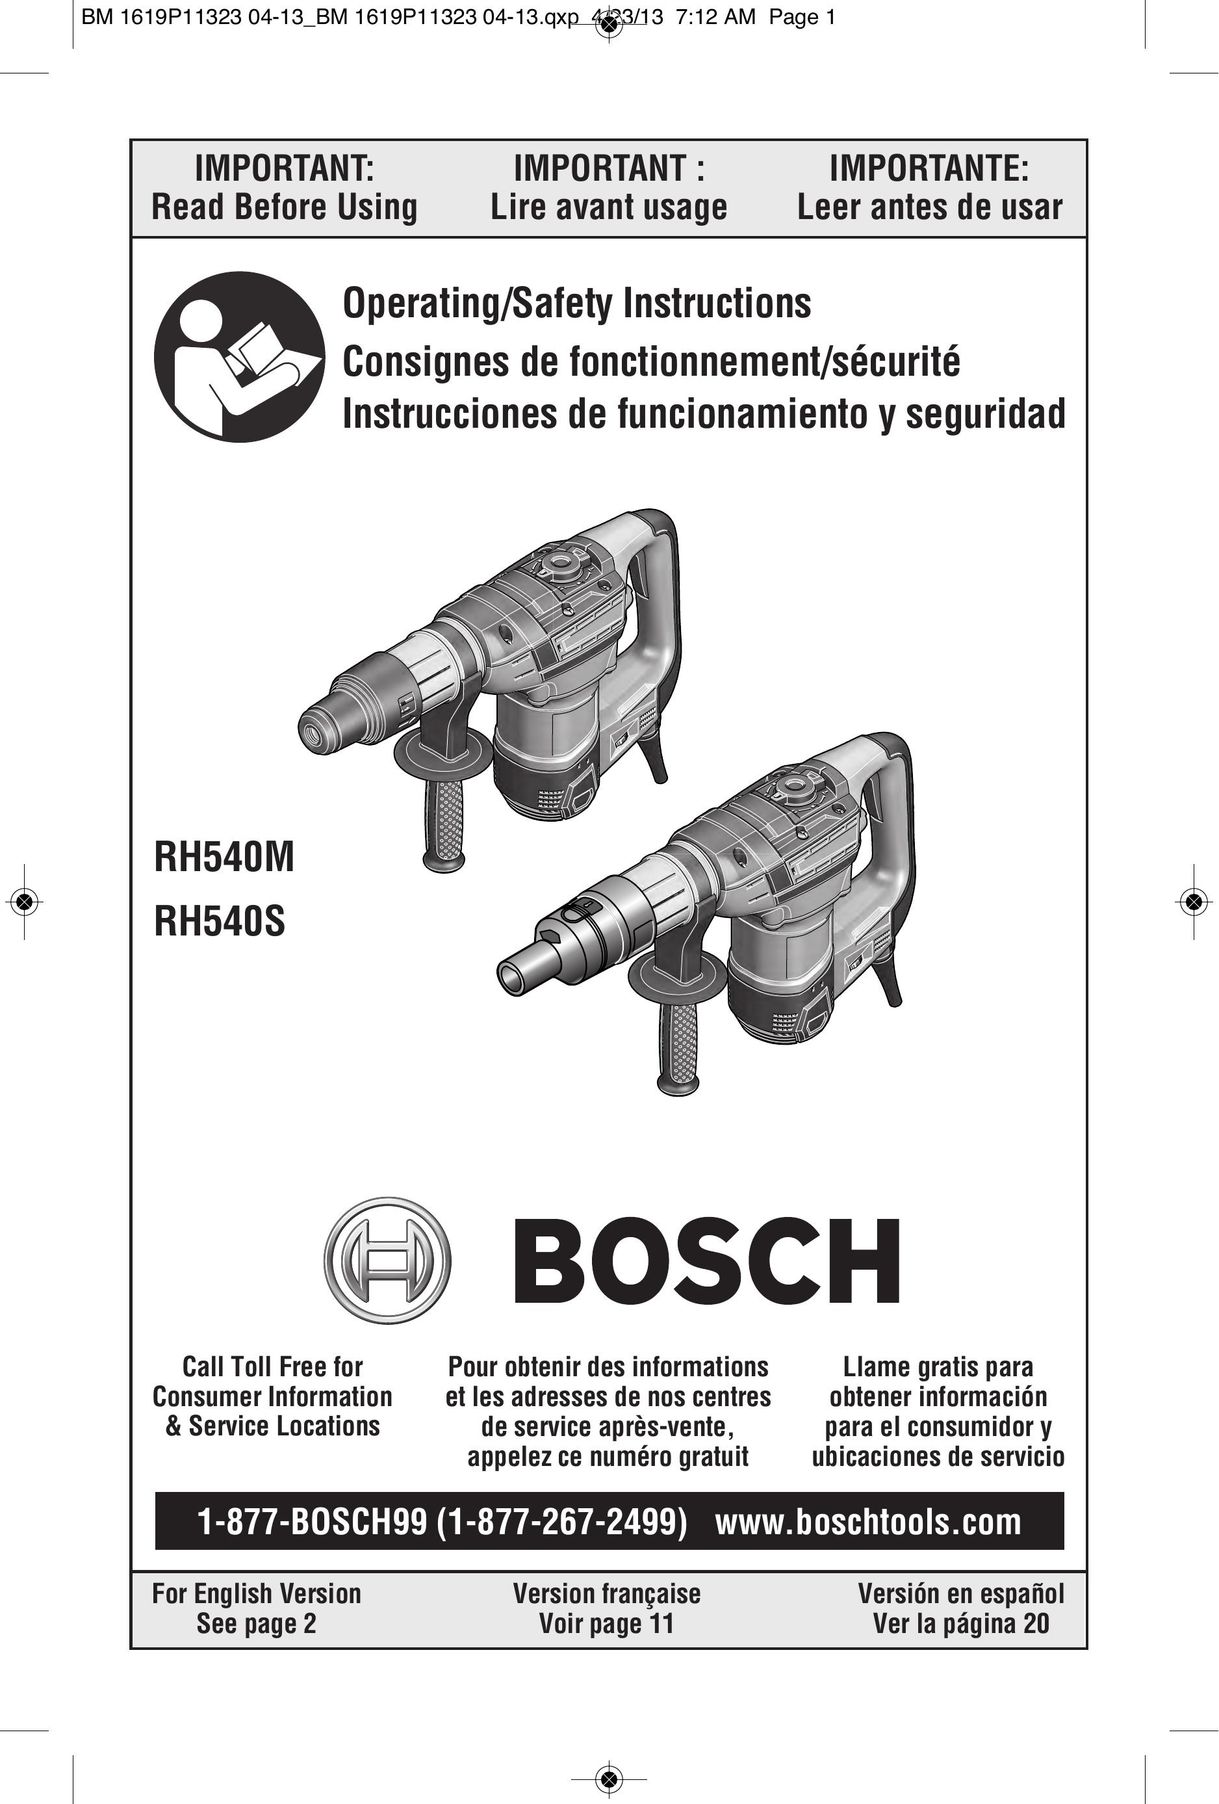 Bosch Power Tools RH540M Power Hammer User Manual